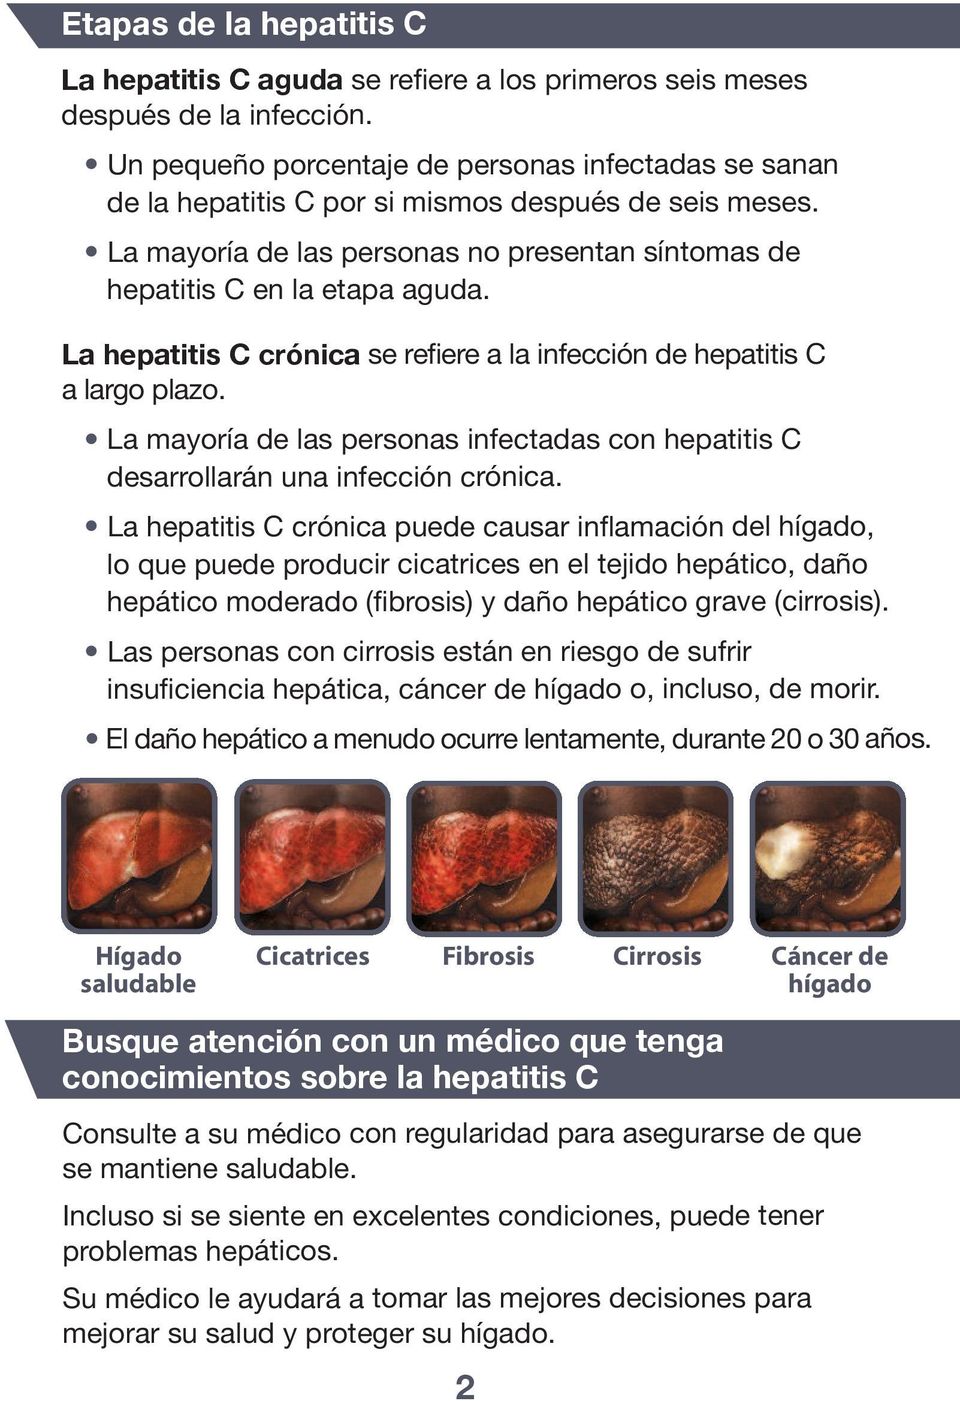 La hepatitis C crónica se refiere a la infección de hepatitis C a largo plazo. La mayoría de las personas infectadas con hepatitis C desarrollarán una infección crónica.